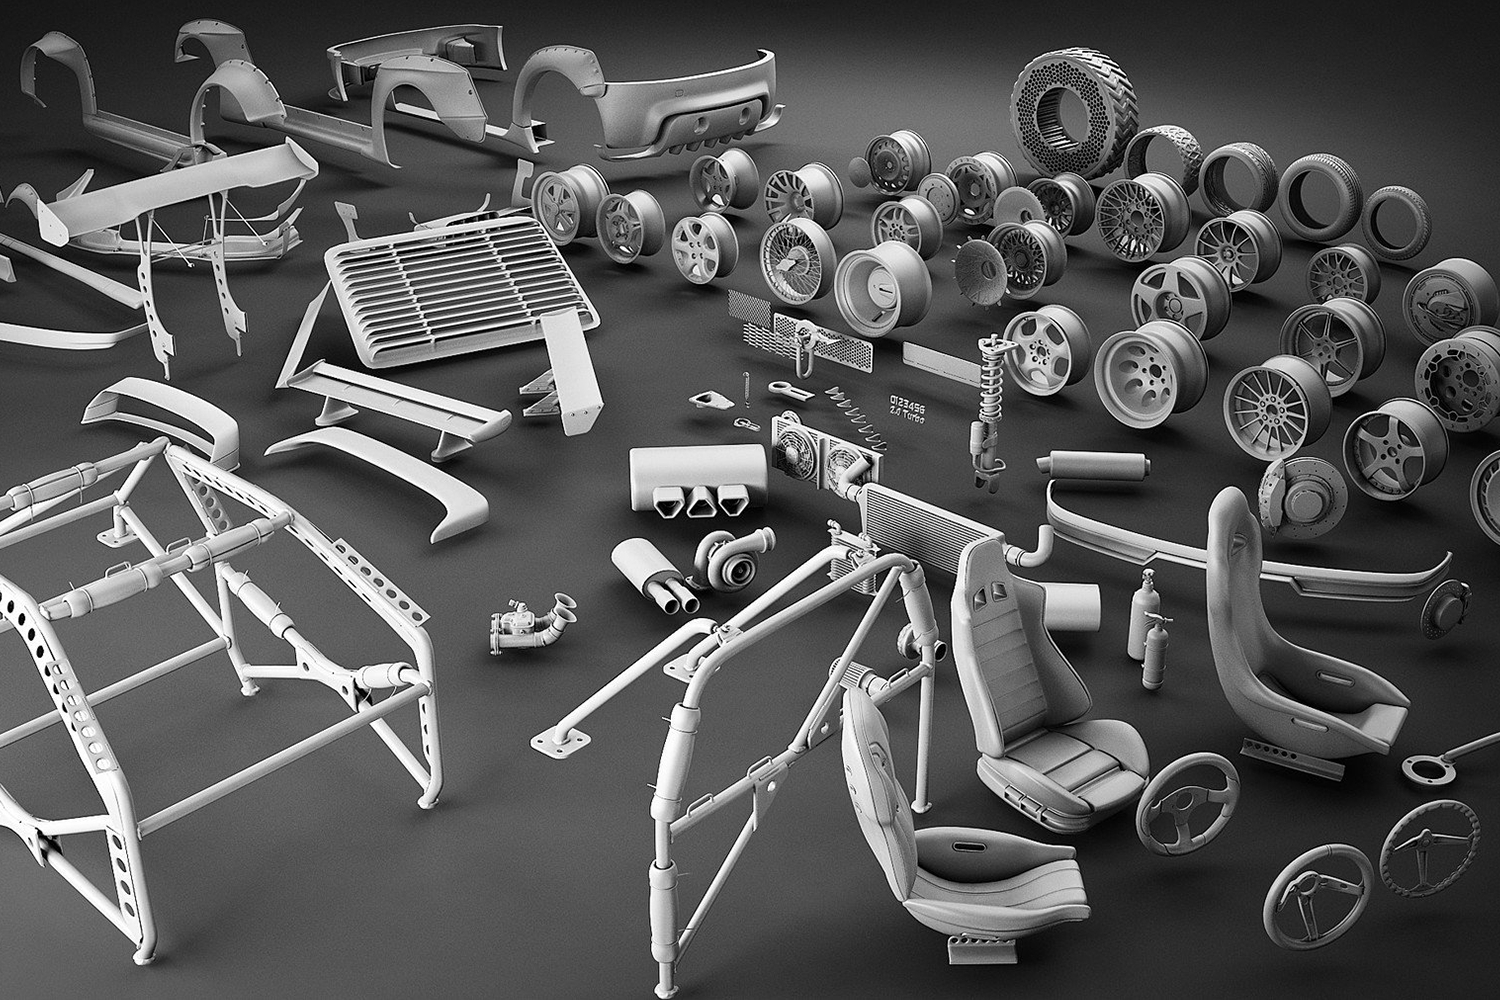 90个汽车组件零件悬架轮胎座椅轮毂轮圈C4D模型obj格式3d素材 Tune Your Car KitYC302